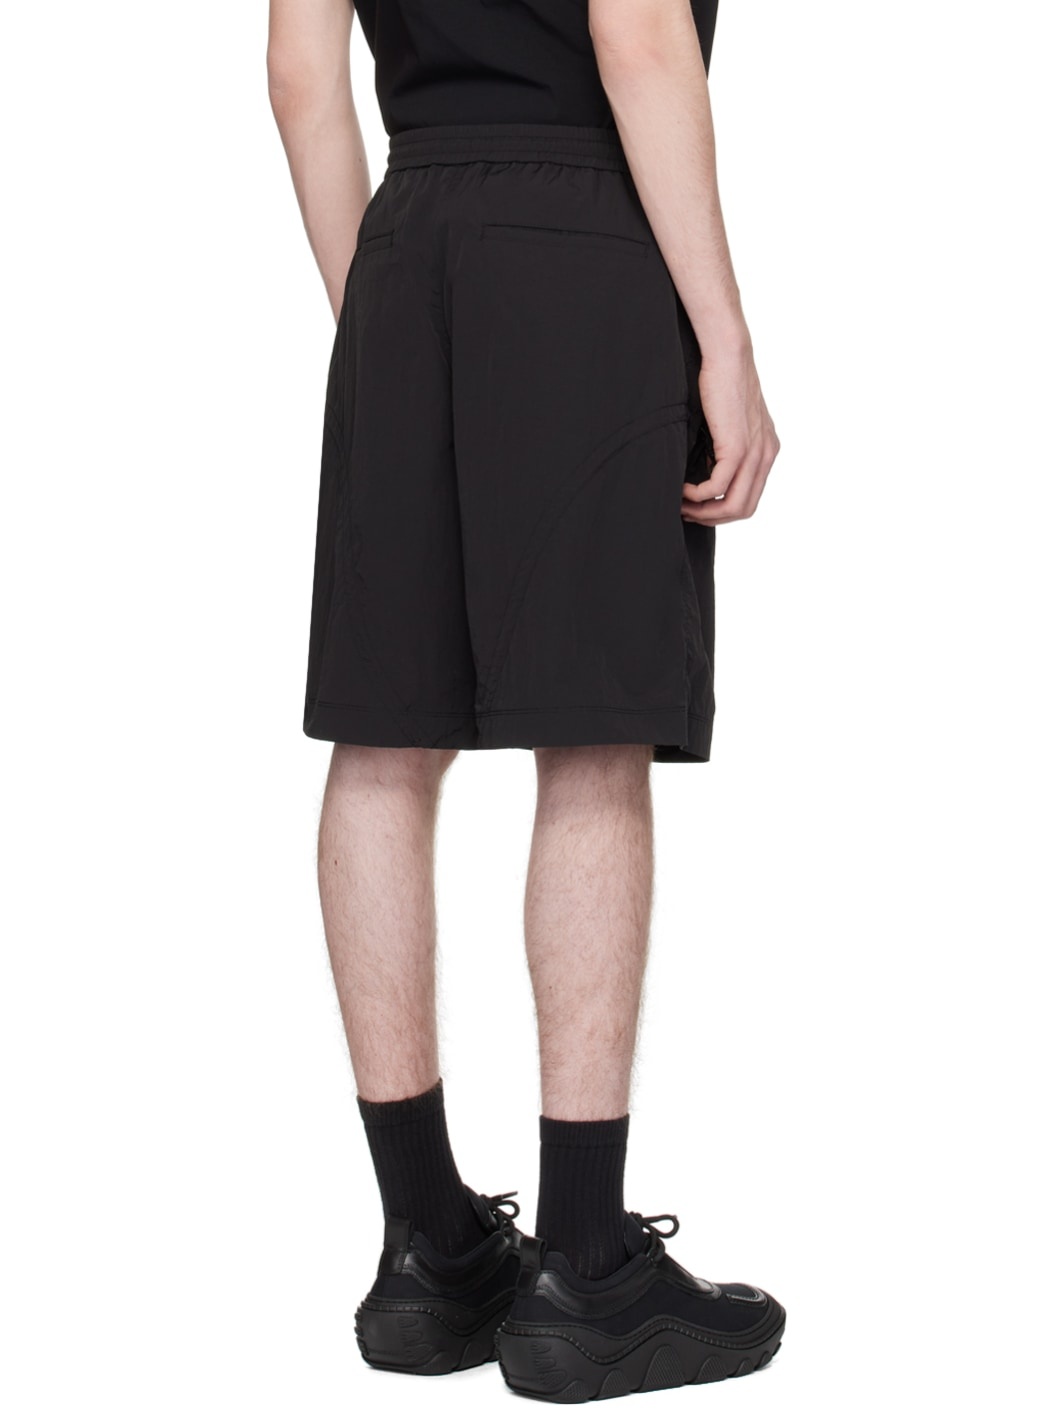 Black Drawstring Shorts - 3